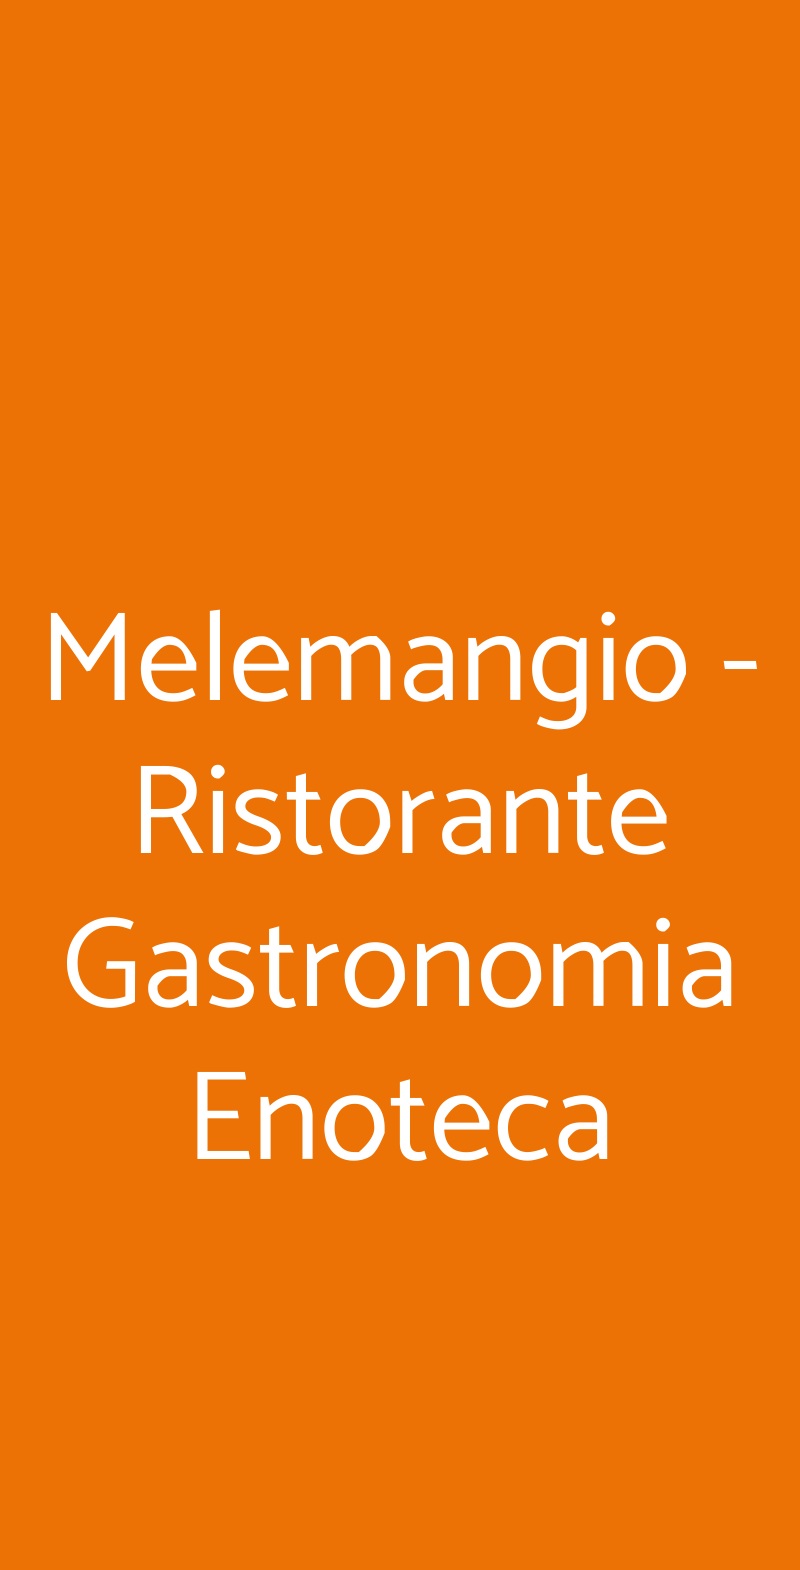 Melemangio - Ristorante Gastronomia Enoteca Melegnano menù 1 pagina